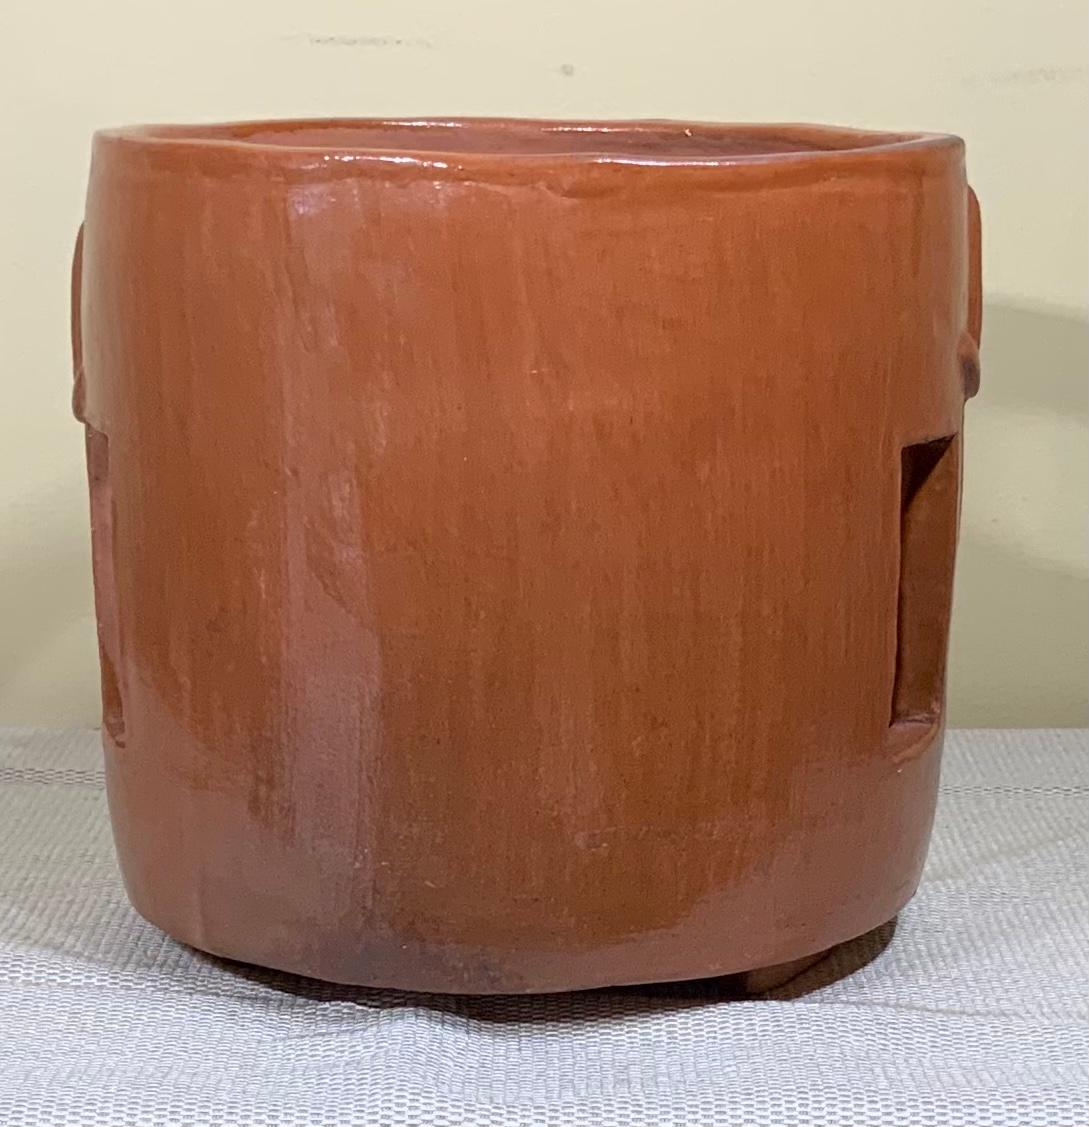 Hand-Painted Unique Ceramic Cubist Vessel or Garden Planter For Sale